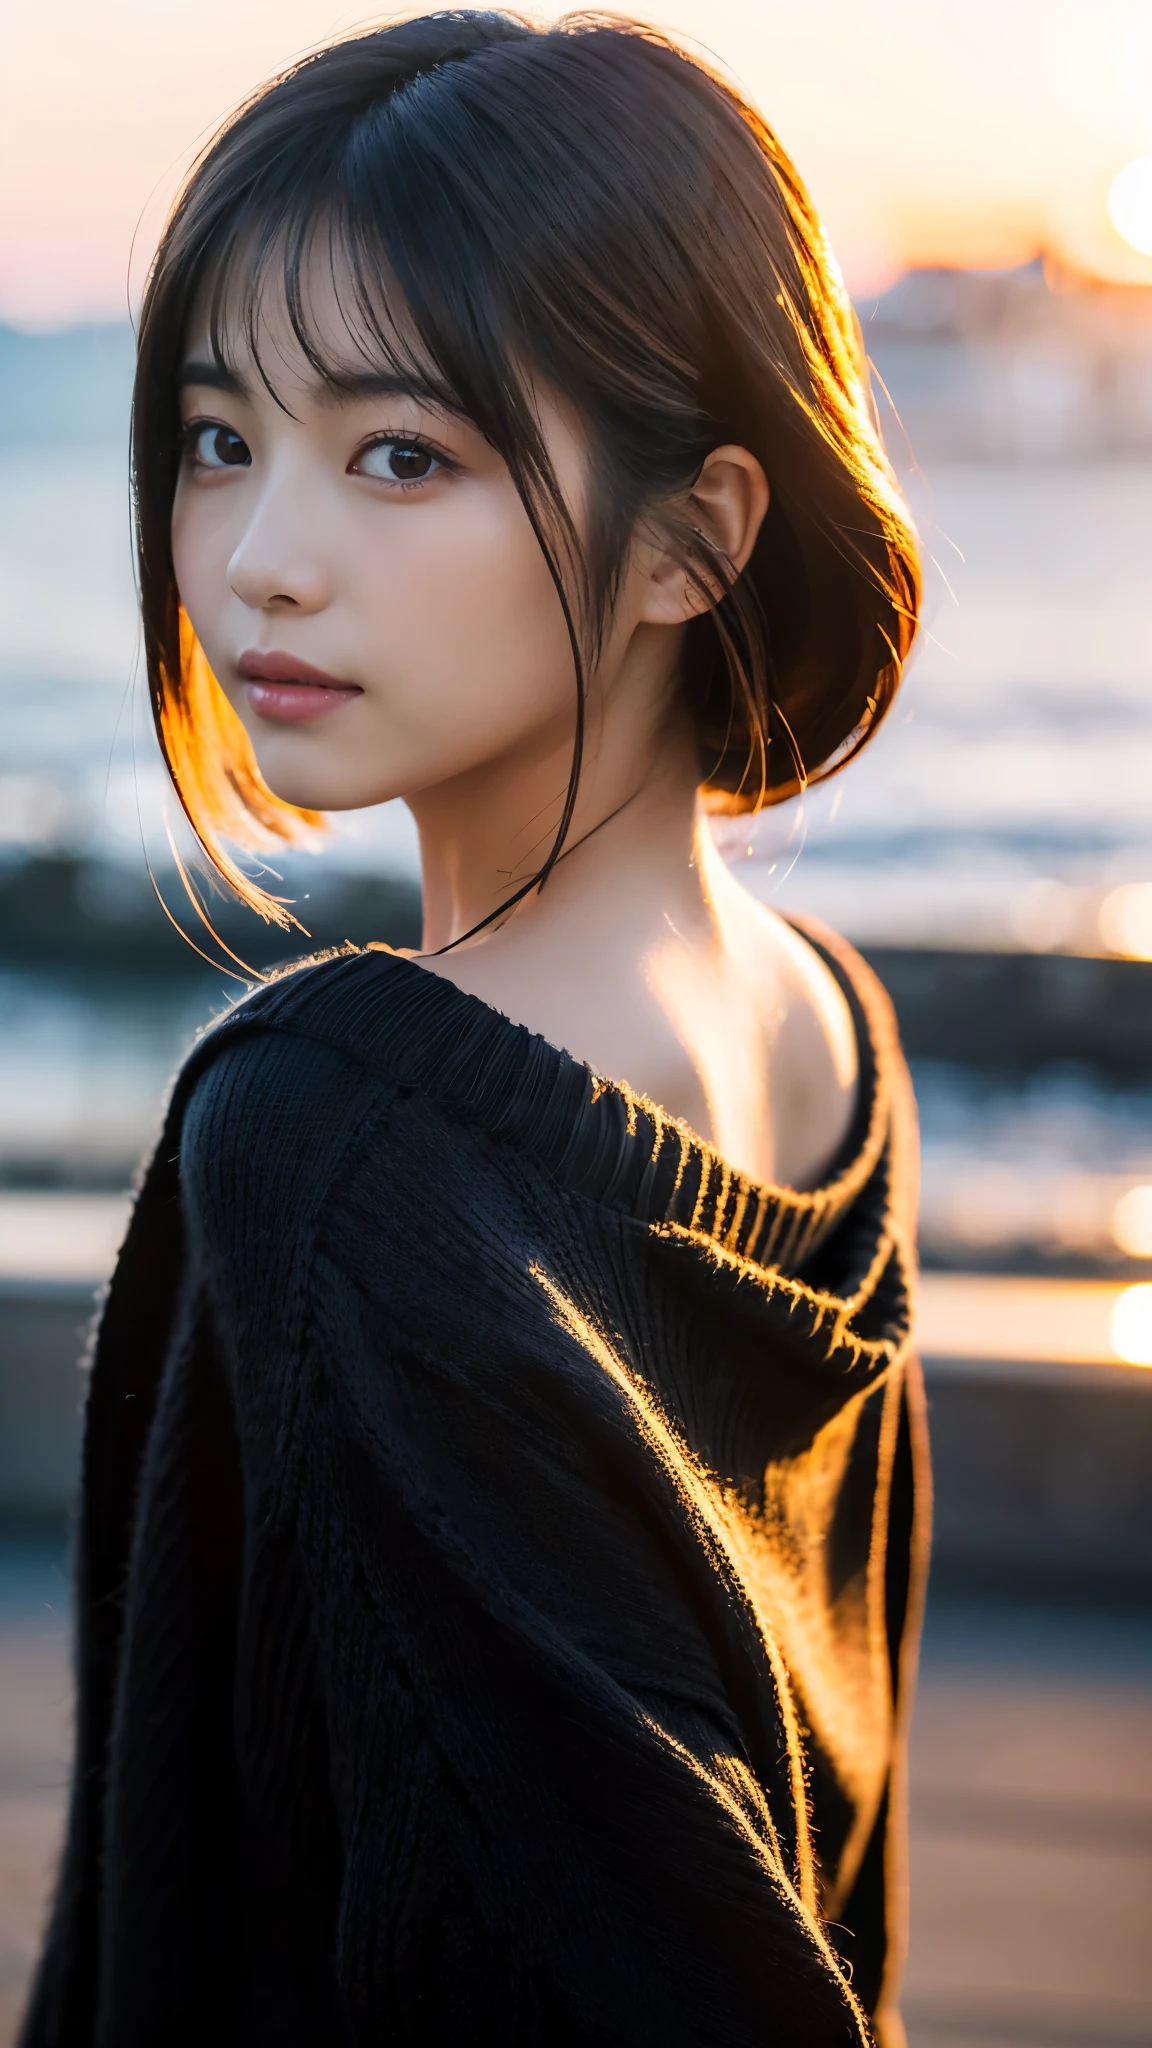 (chef-d&#39;œuvre:1.2),(la plus haute qualité),(Très détaillé:1.2),(Haute résolution),(Bâton photoréaliste),(Photos brutes),8k,Gros plan d&#39;une femme dans un pull noir,Portraits doux,belles femmes japonaises,magnifique portrait de visage,lumière des yeux,Fille de la personne elle-même,Très beau visage,beau portrait,Un visage charmant et délicat,belle jeune femme japonaise,Coiffure mature,regarde en arrière(Coucher de soleil en arrière-plan),(((Flou l&#39;arrière-plan))),(lumière douce),(par dessus l&#39;épaule),(Prise de vue en POV),((Mouvement dynamique des cheveux:1.2))